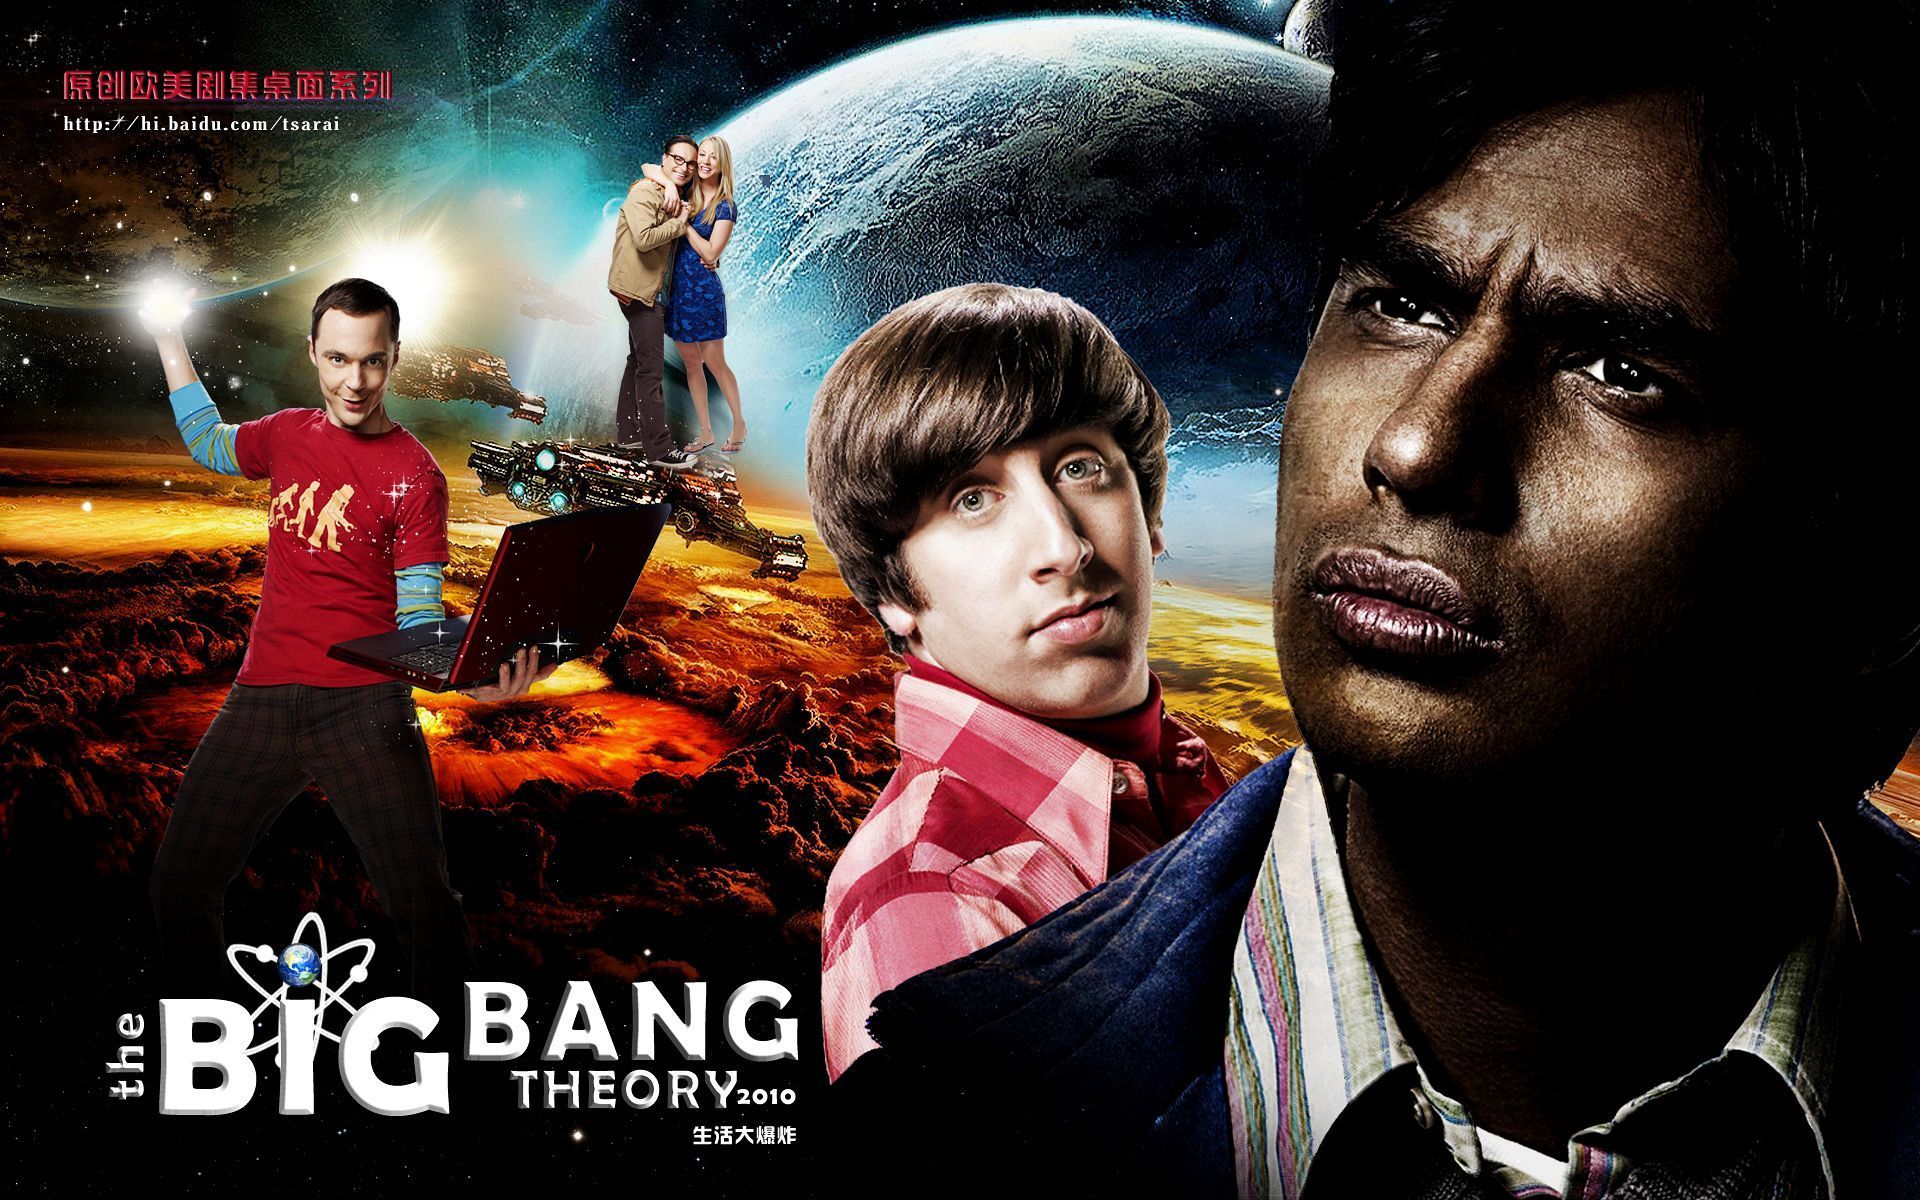 the-big-bang-theory-the-big-bang-theory-14674935-1920-1200 (1)